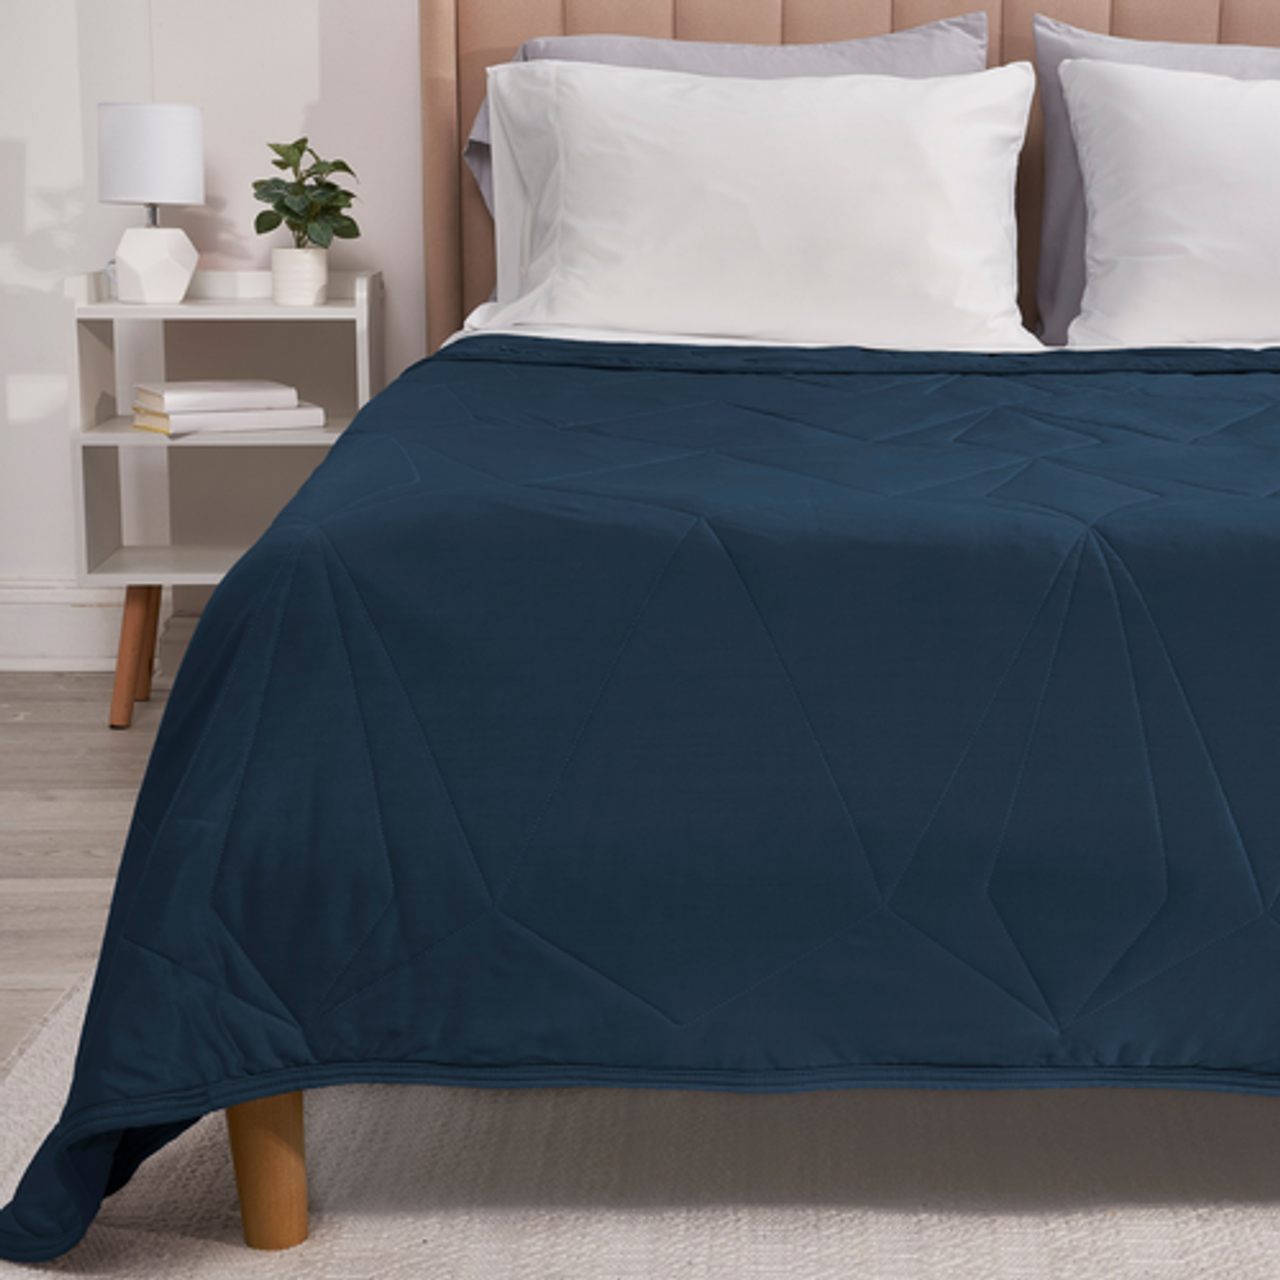 Bedgear - Cooling Blanket - Navy